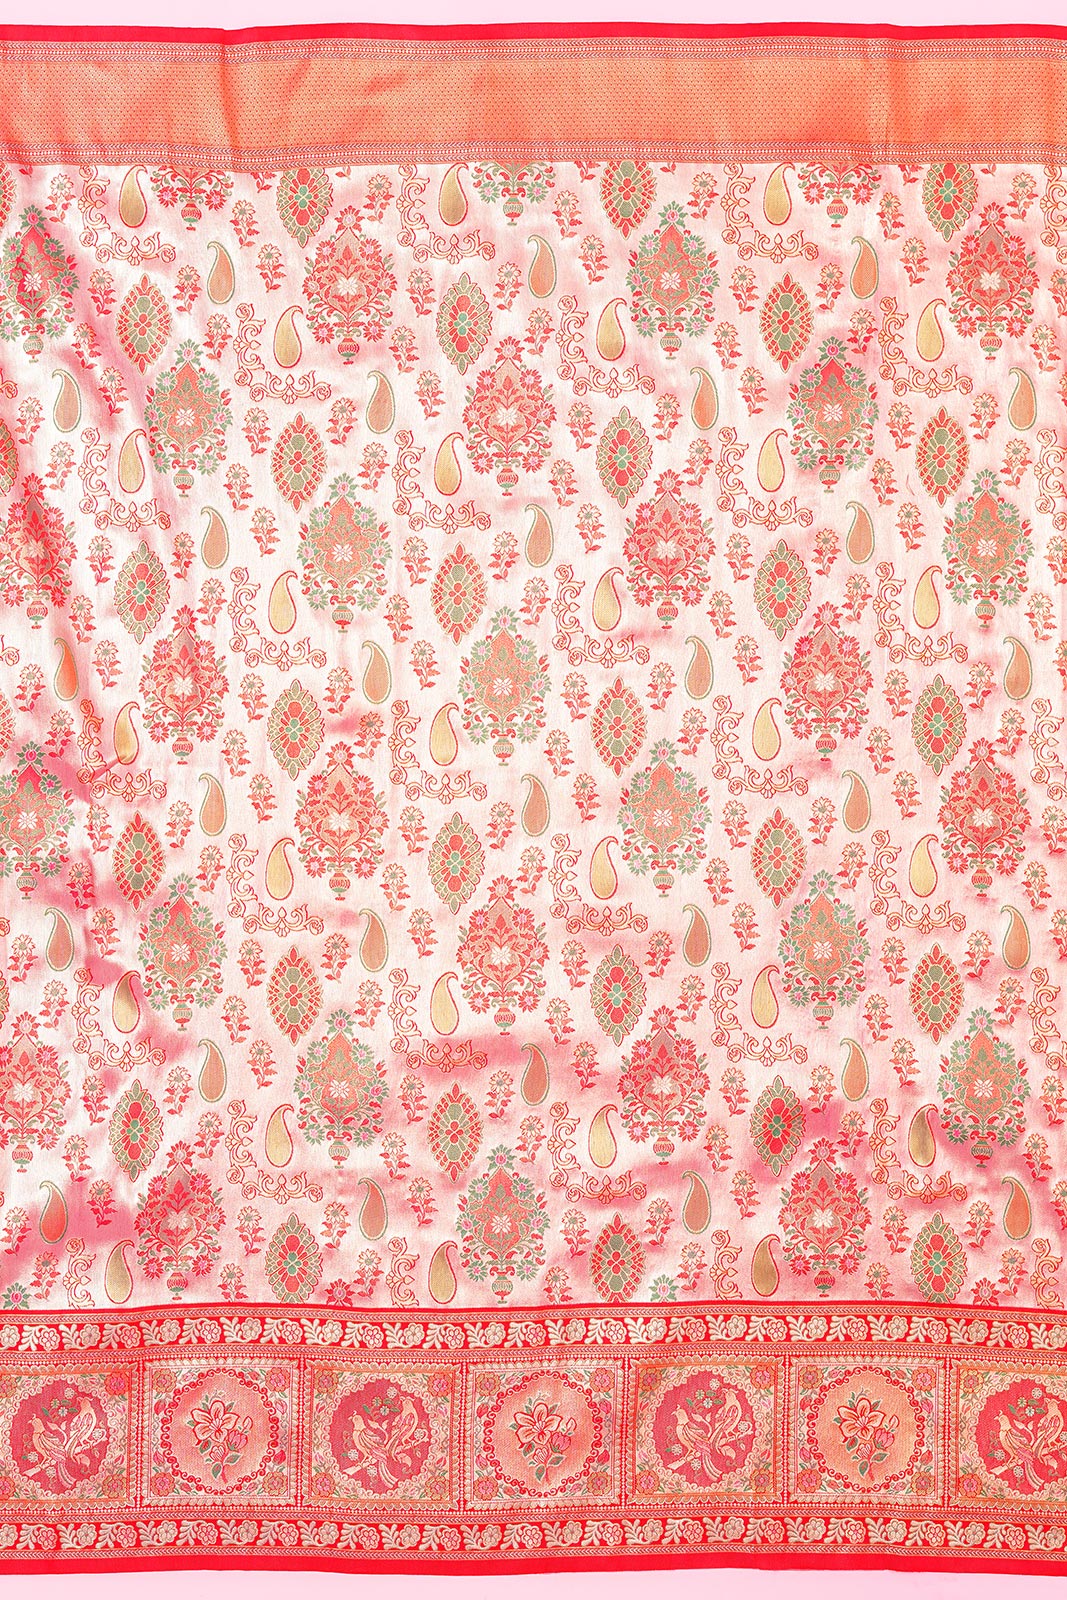 Kanchipuram Silk Tissue Brocade Cherry Red Saree